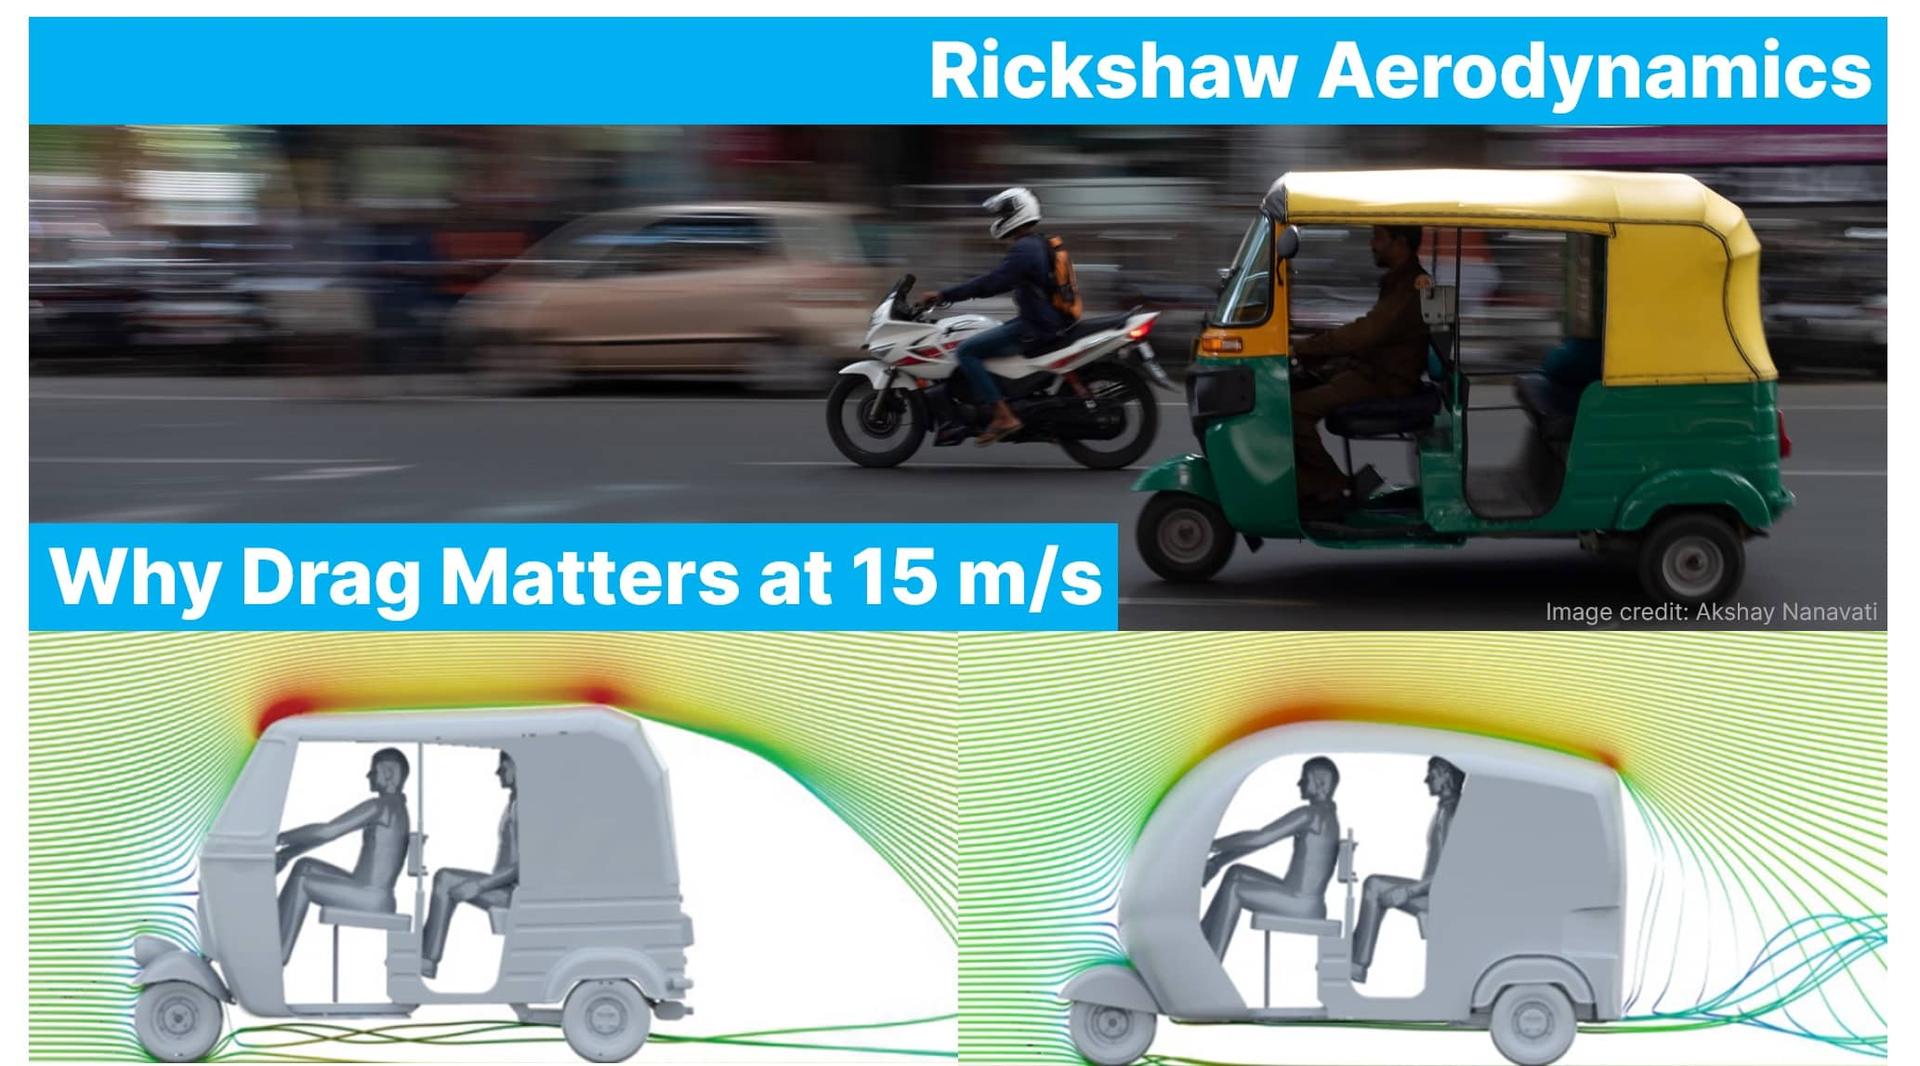 Rickshaw Aerodynamics - Drag at 15 m/s